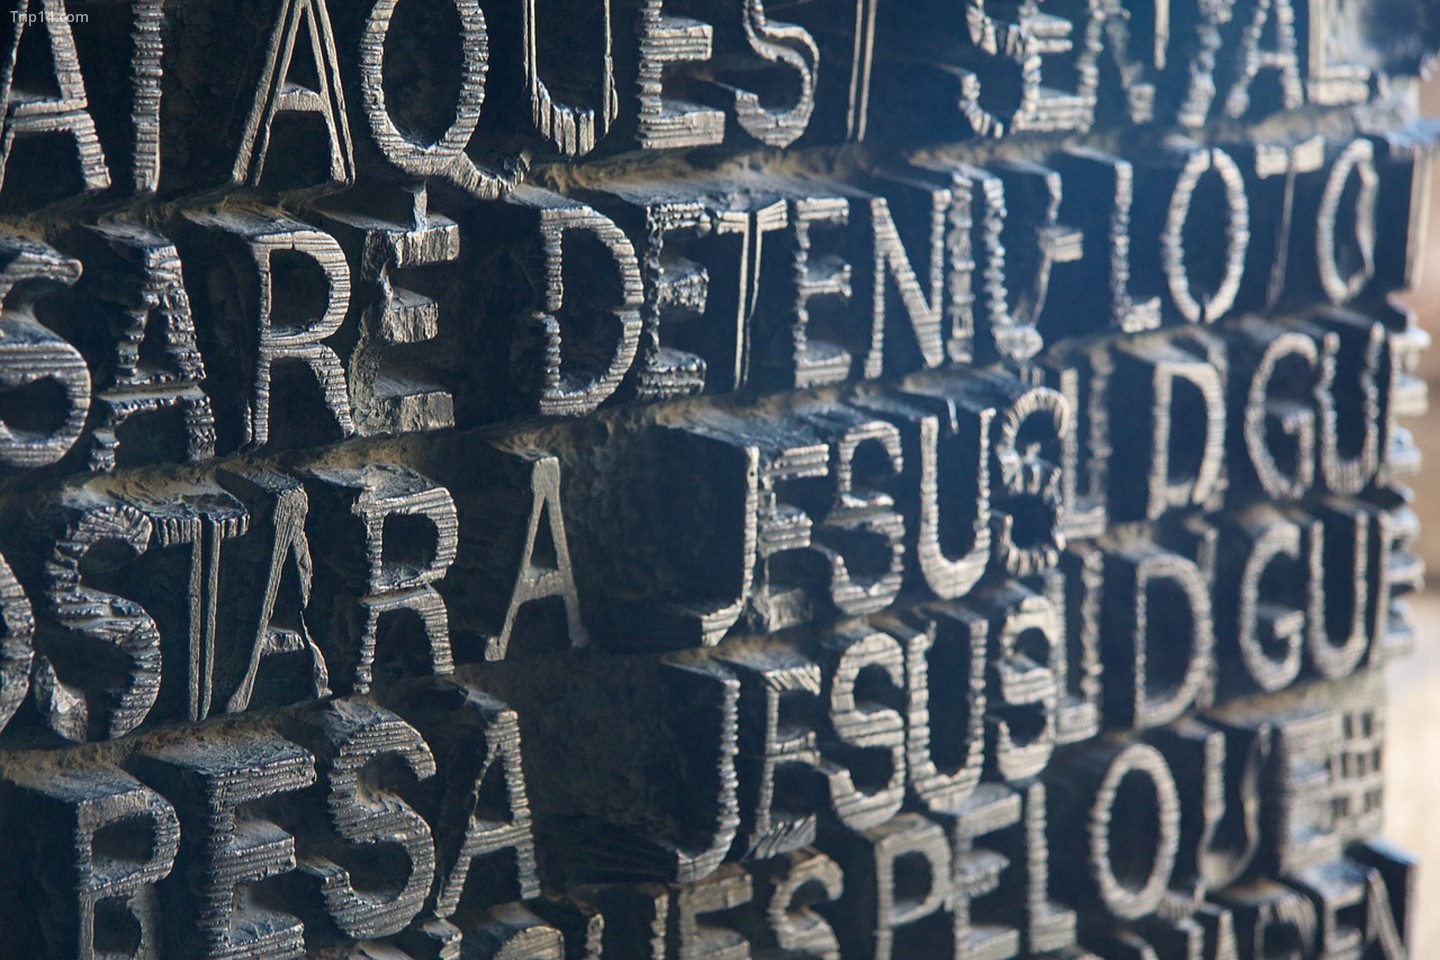 6. Sagrada Família được bao phủ bởi các biểu tượng